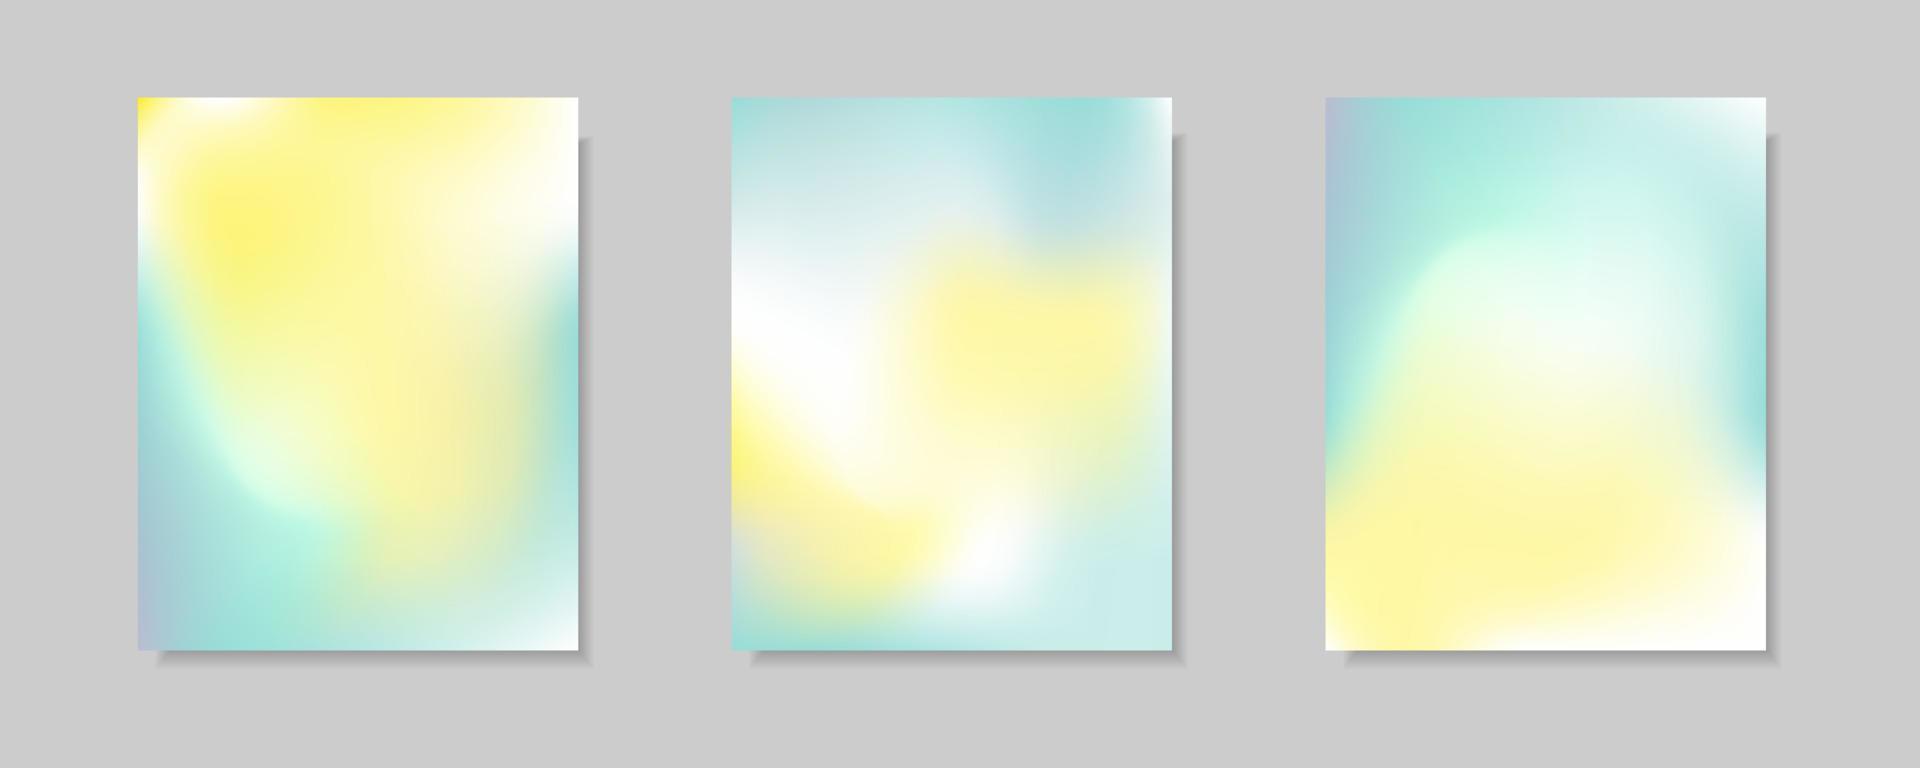 verzameling van abstracte blauwe, witte, gele gradiënt vectordekkingsachtergronden. voor zakelijke brochureachtergronden, kaarten, wallpapers, posters en grafische ontwerpen. illustratie sjabloon vector